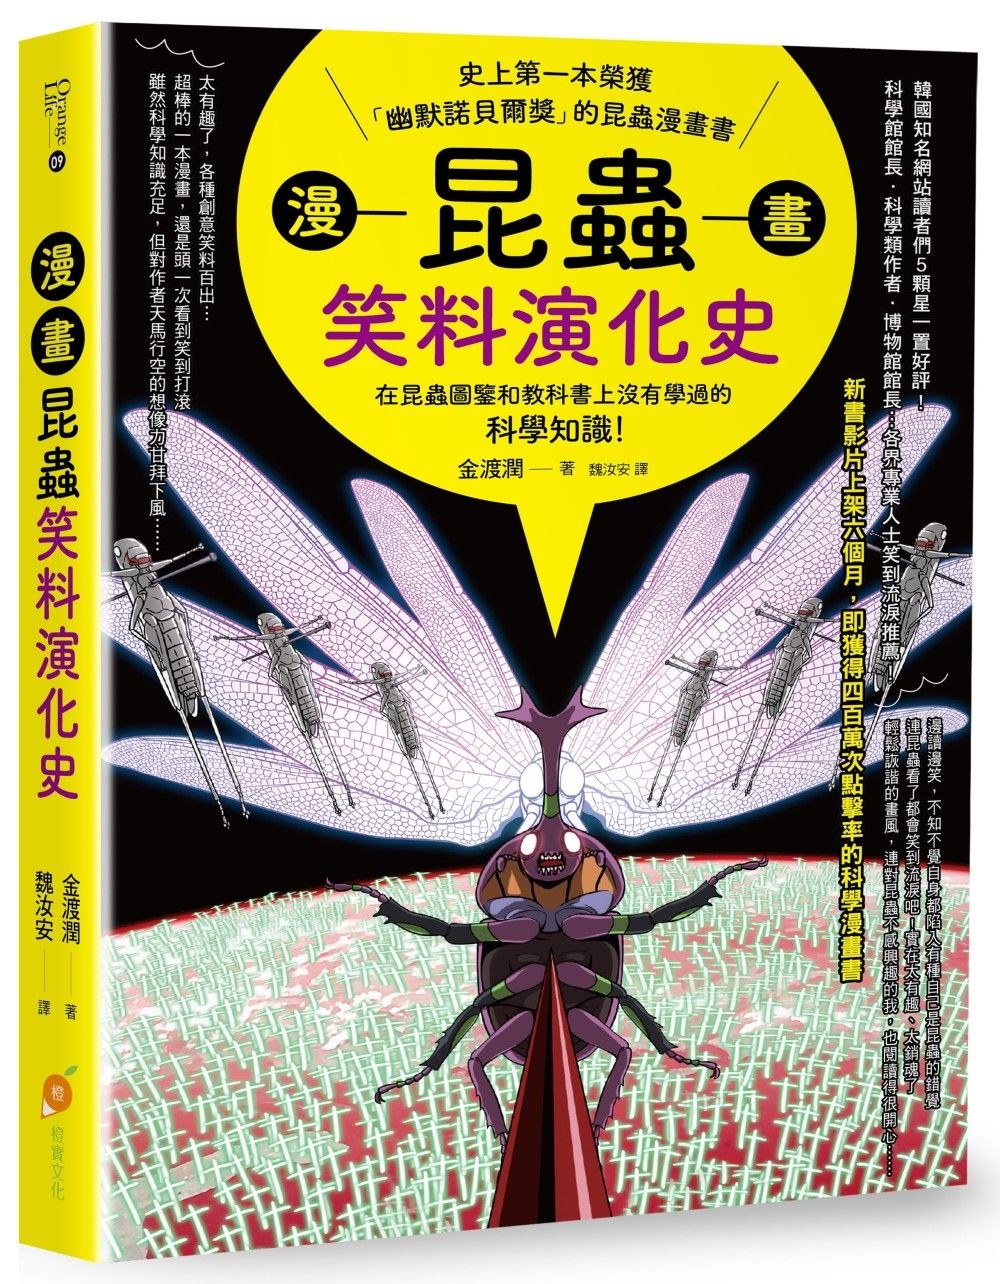 漫畫昆蟲笑料演化史：史上第一本榮獲「幽默諾貝爾獎」的昆蟲漫畫書